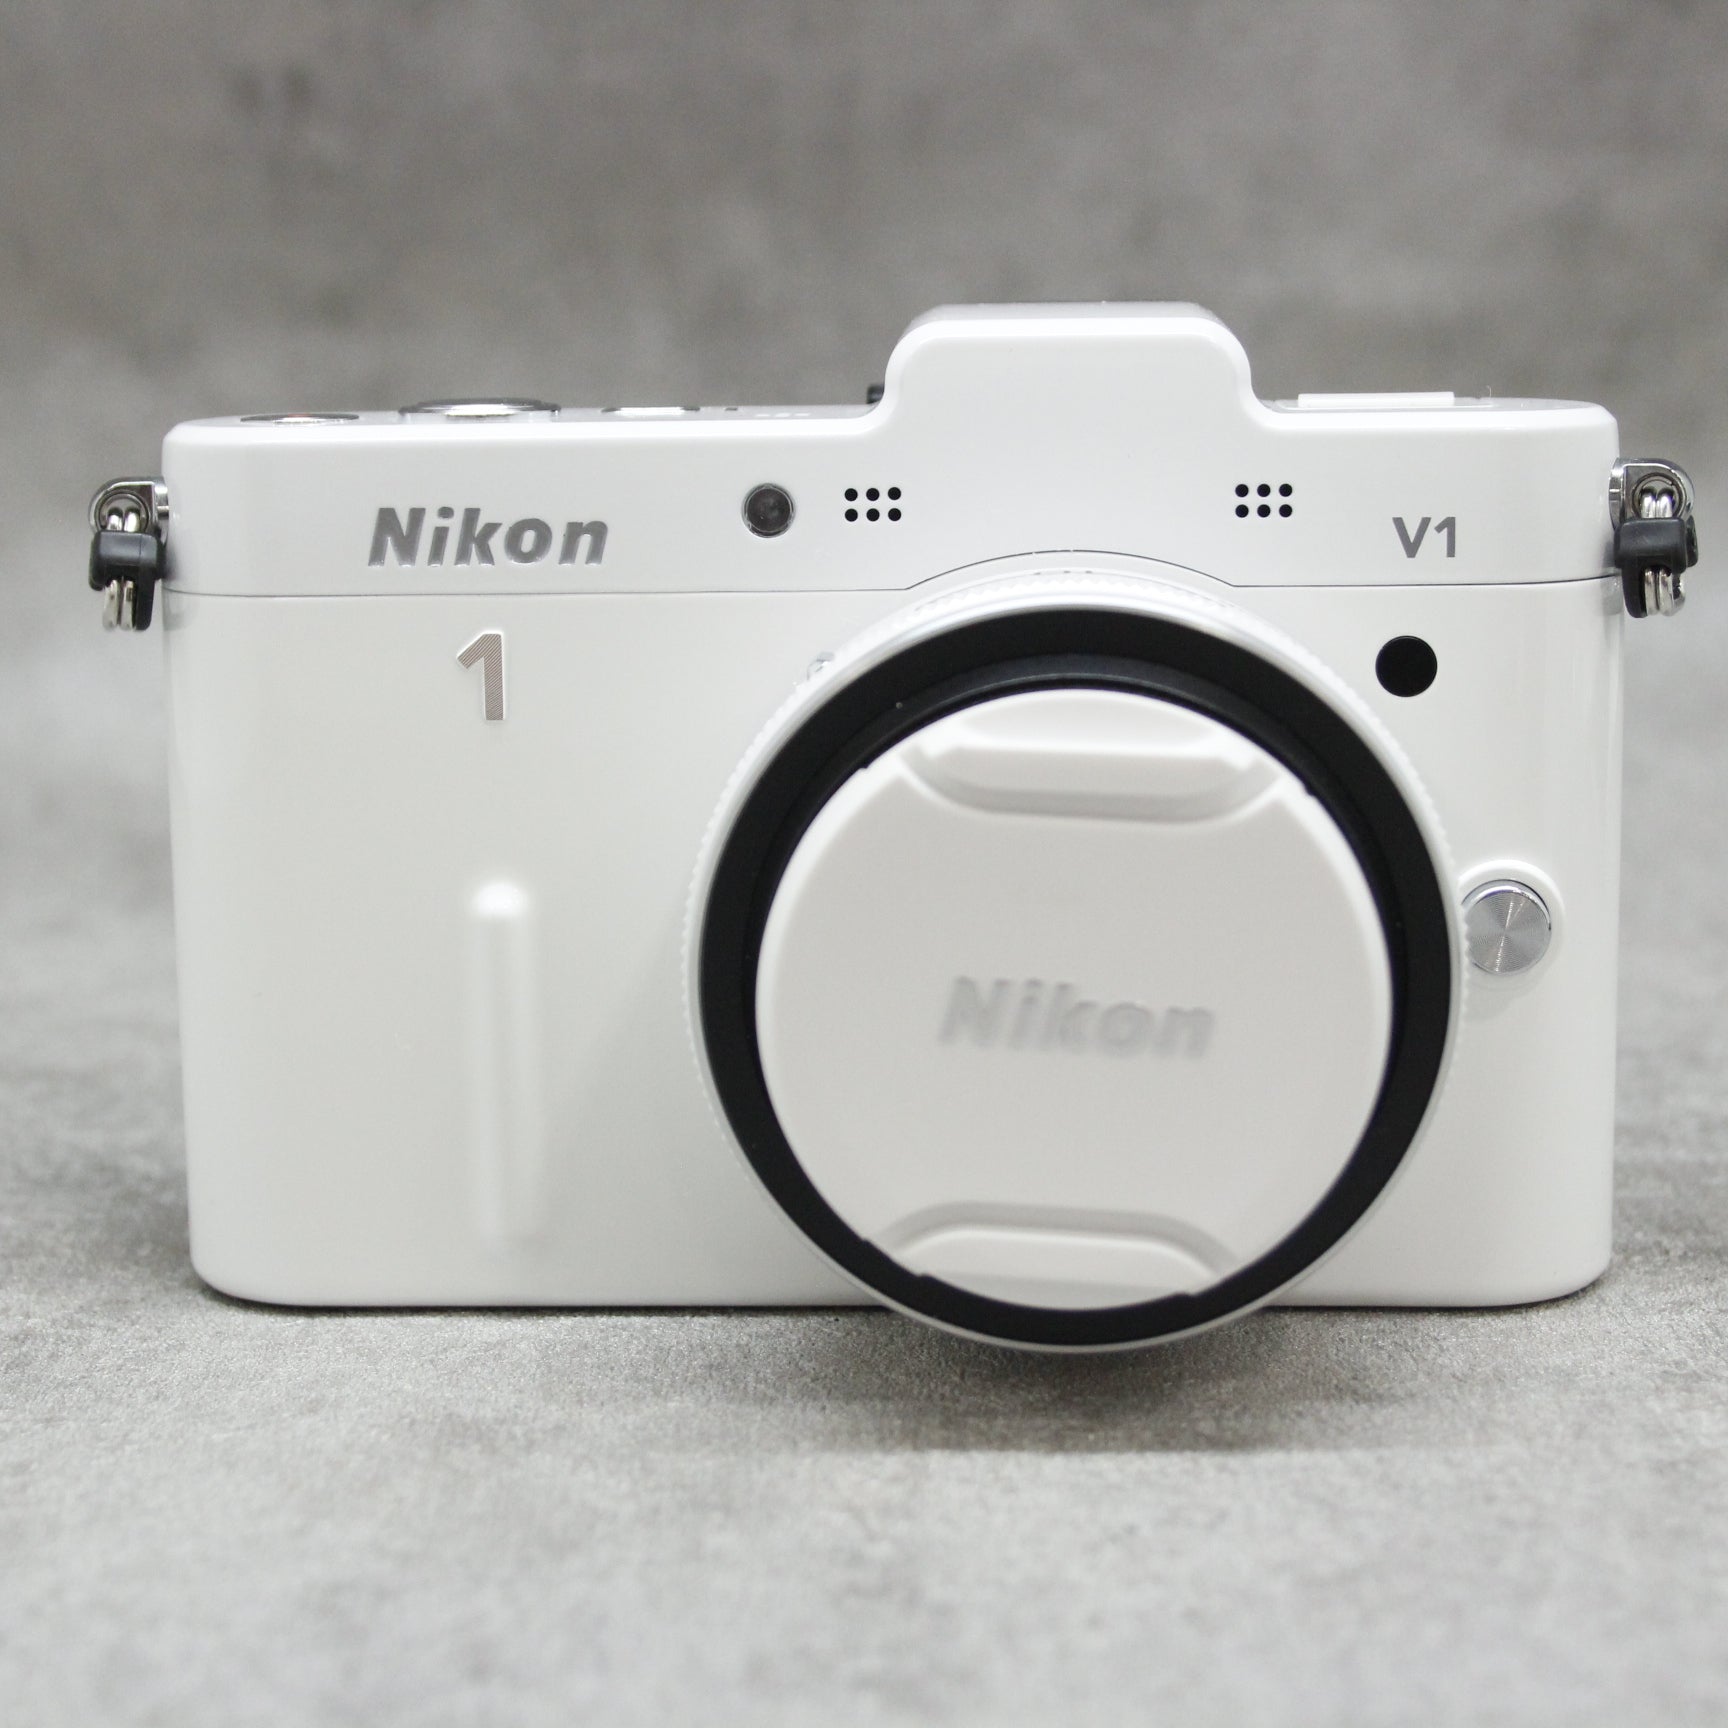 シリーズ1ニコン Nikon1 v1 レンズセット